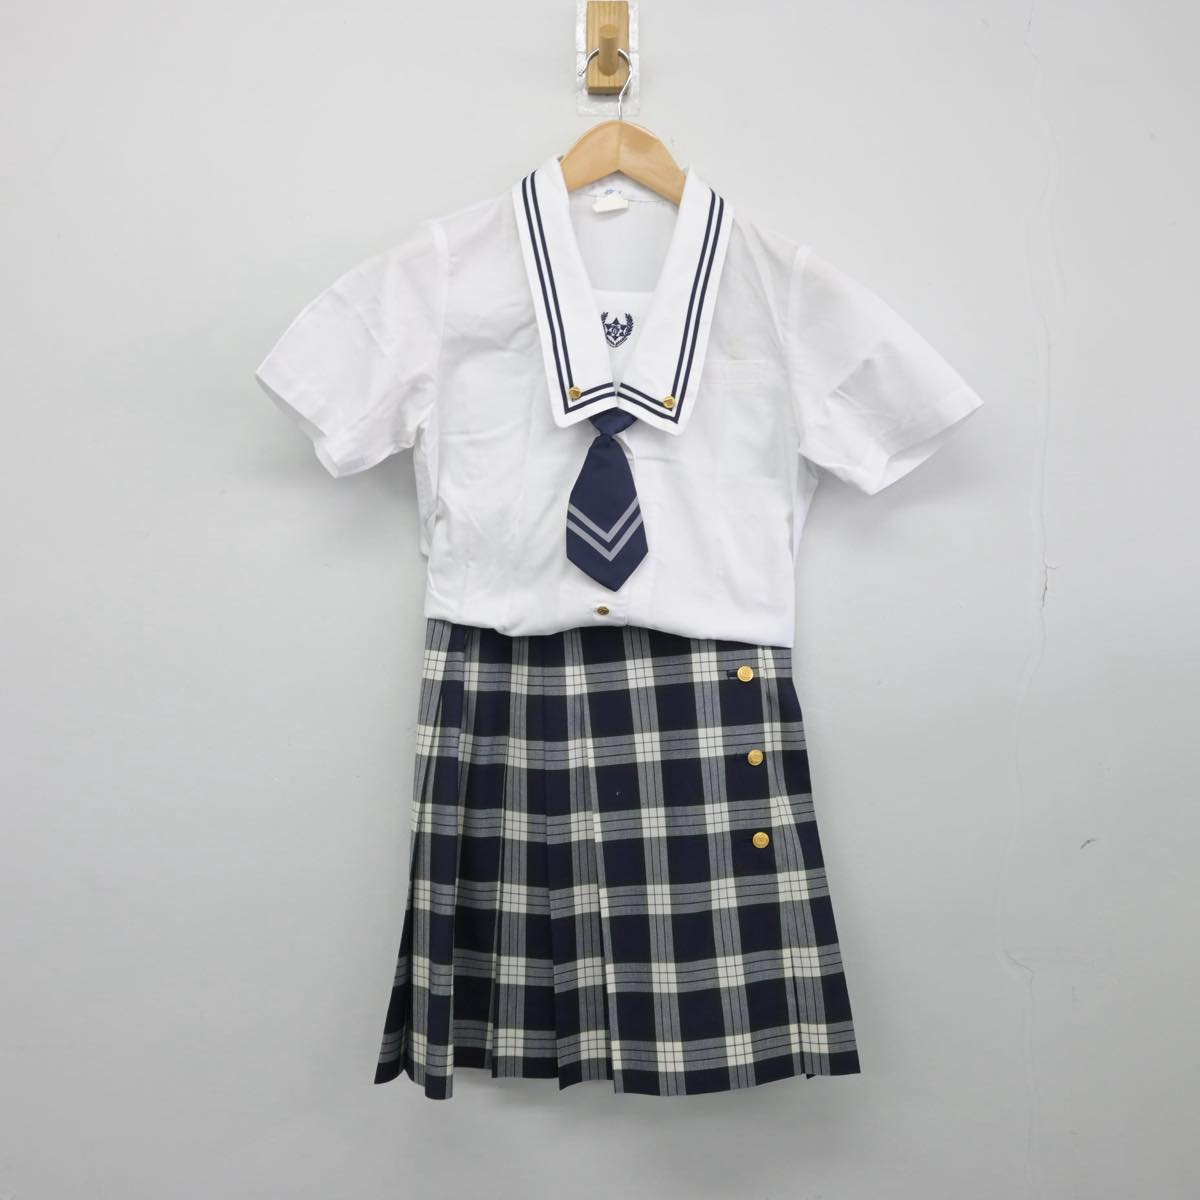 明泉幼稚園制服一式 - 子供服